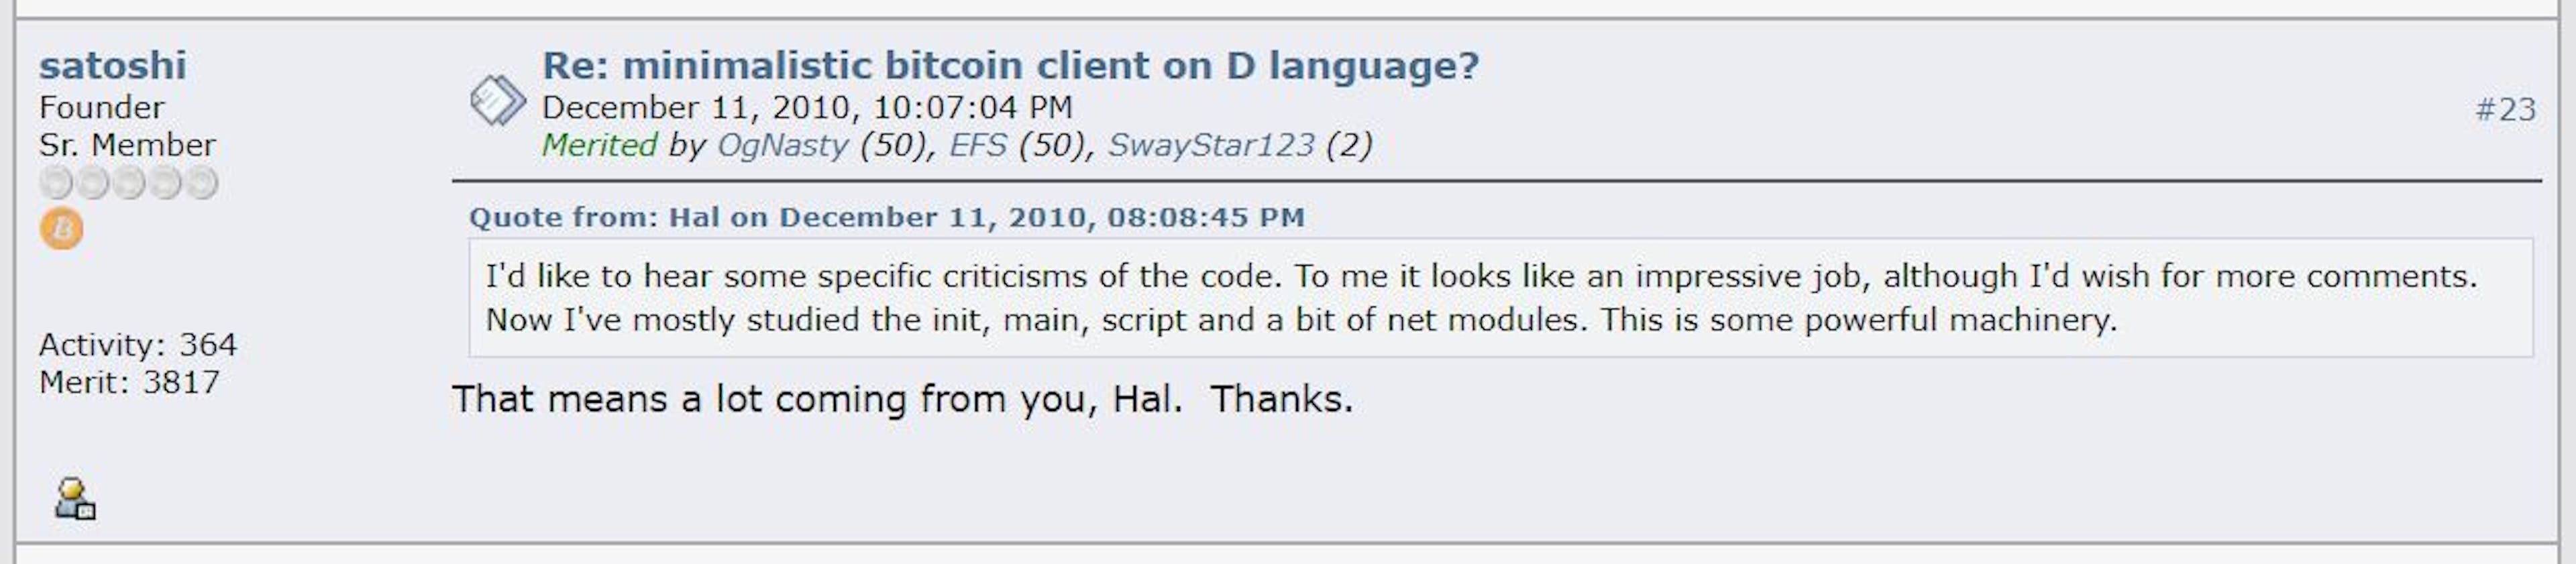 Conversation légendaire entre Satoshi Nakamoto et Hal Finney, deux jours avant que Satoshi n'entre son dernier message sur le forum Bitcoin.